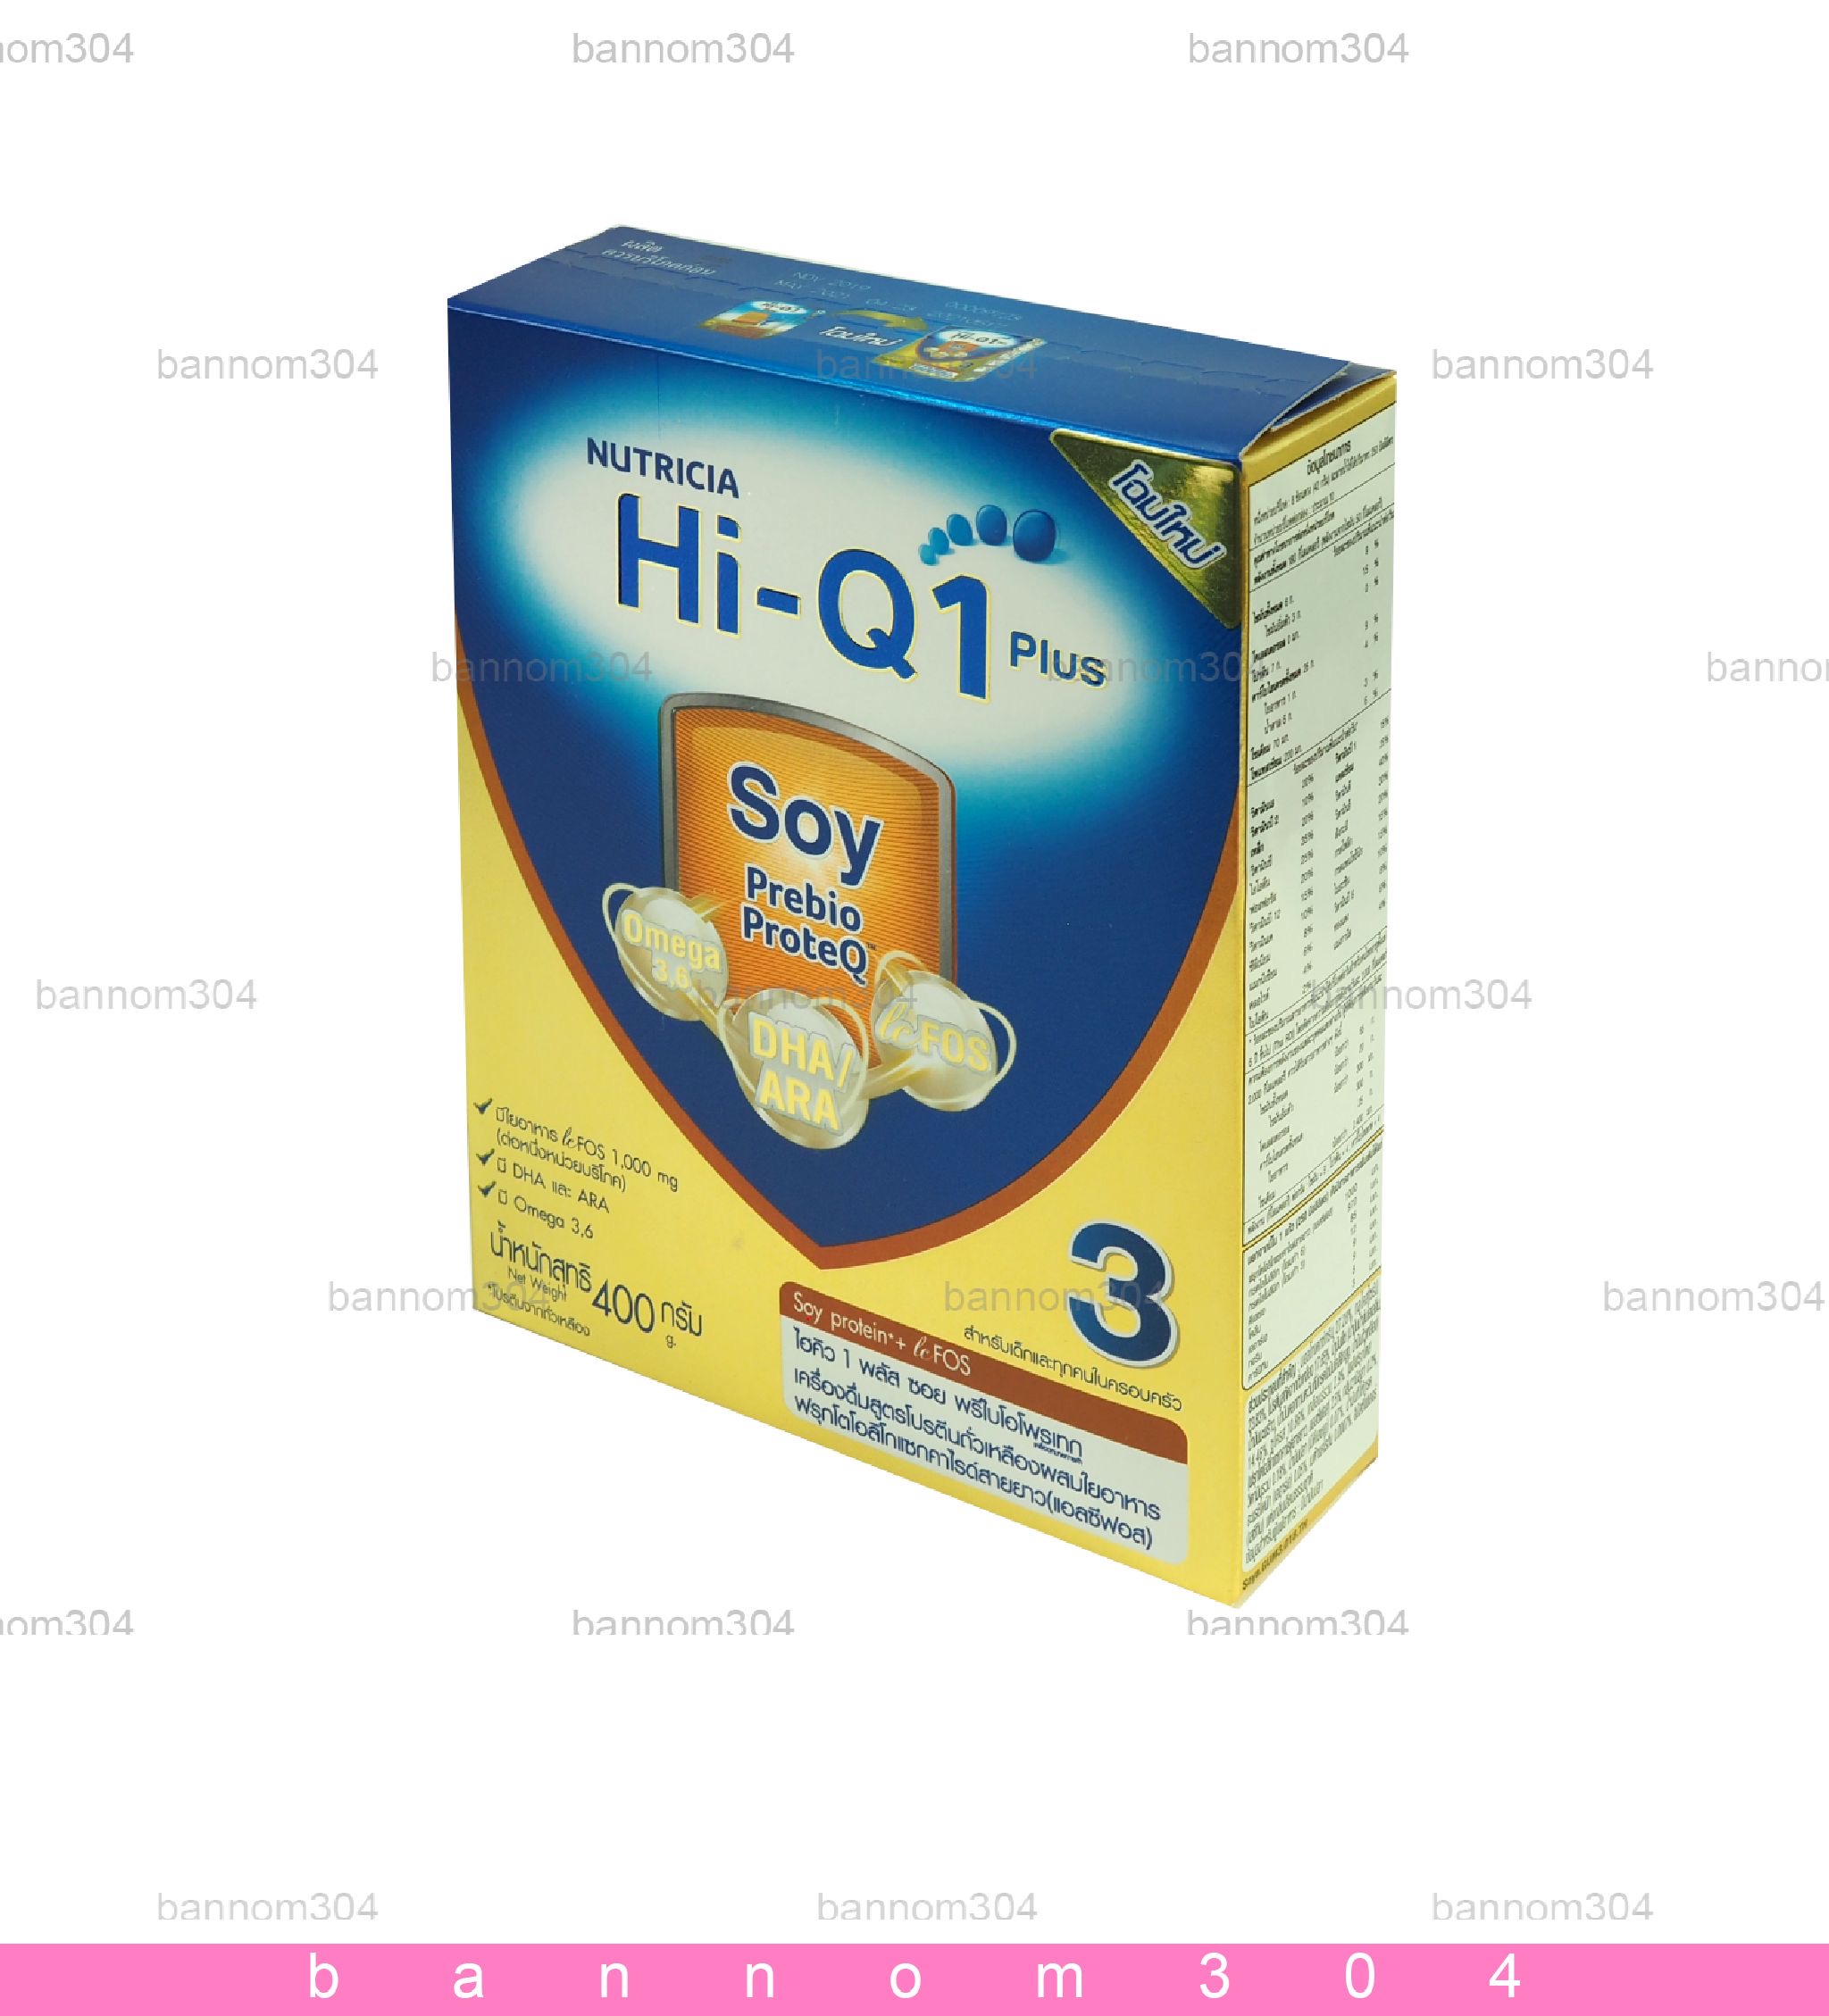 Hi-Q Soy นมผง ไฮคิว1 พลัส ซอย พรีไบโอโพรเทค ขนาด 400 กรัม